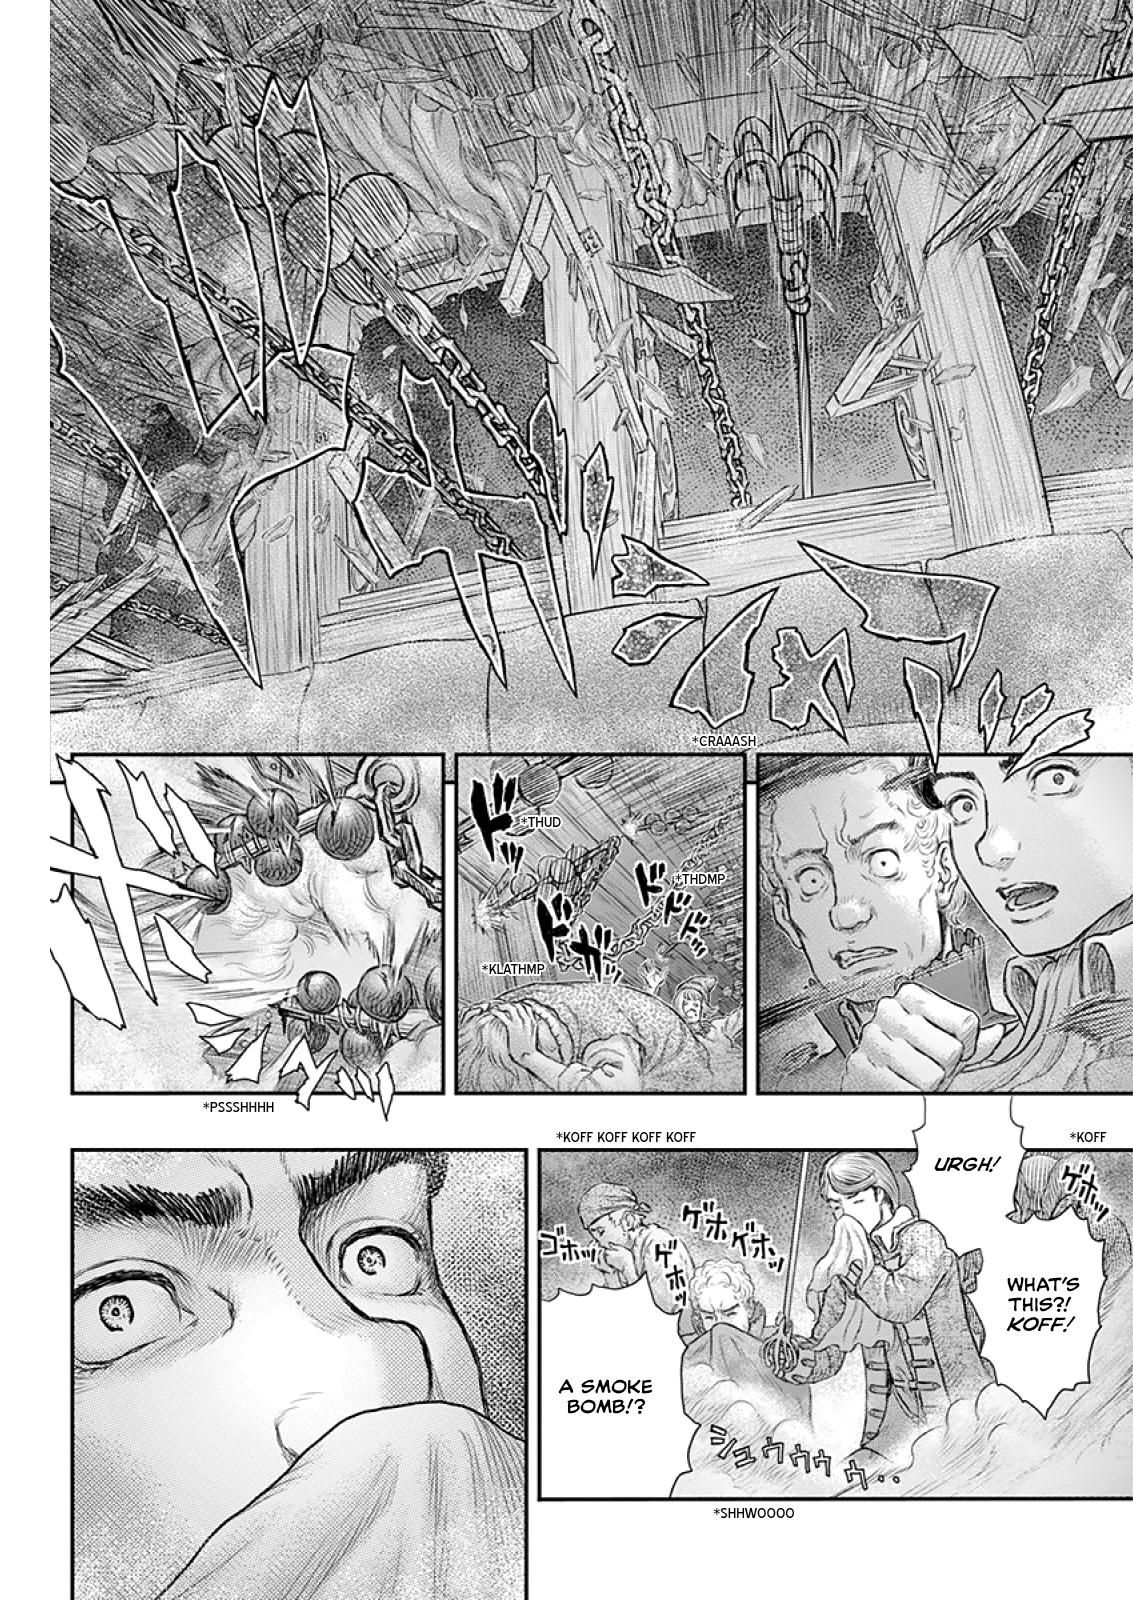 Berserk Manga Chapter 373 image 18